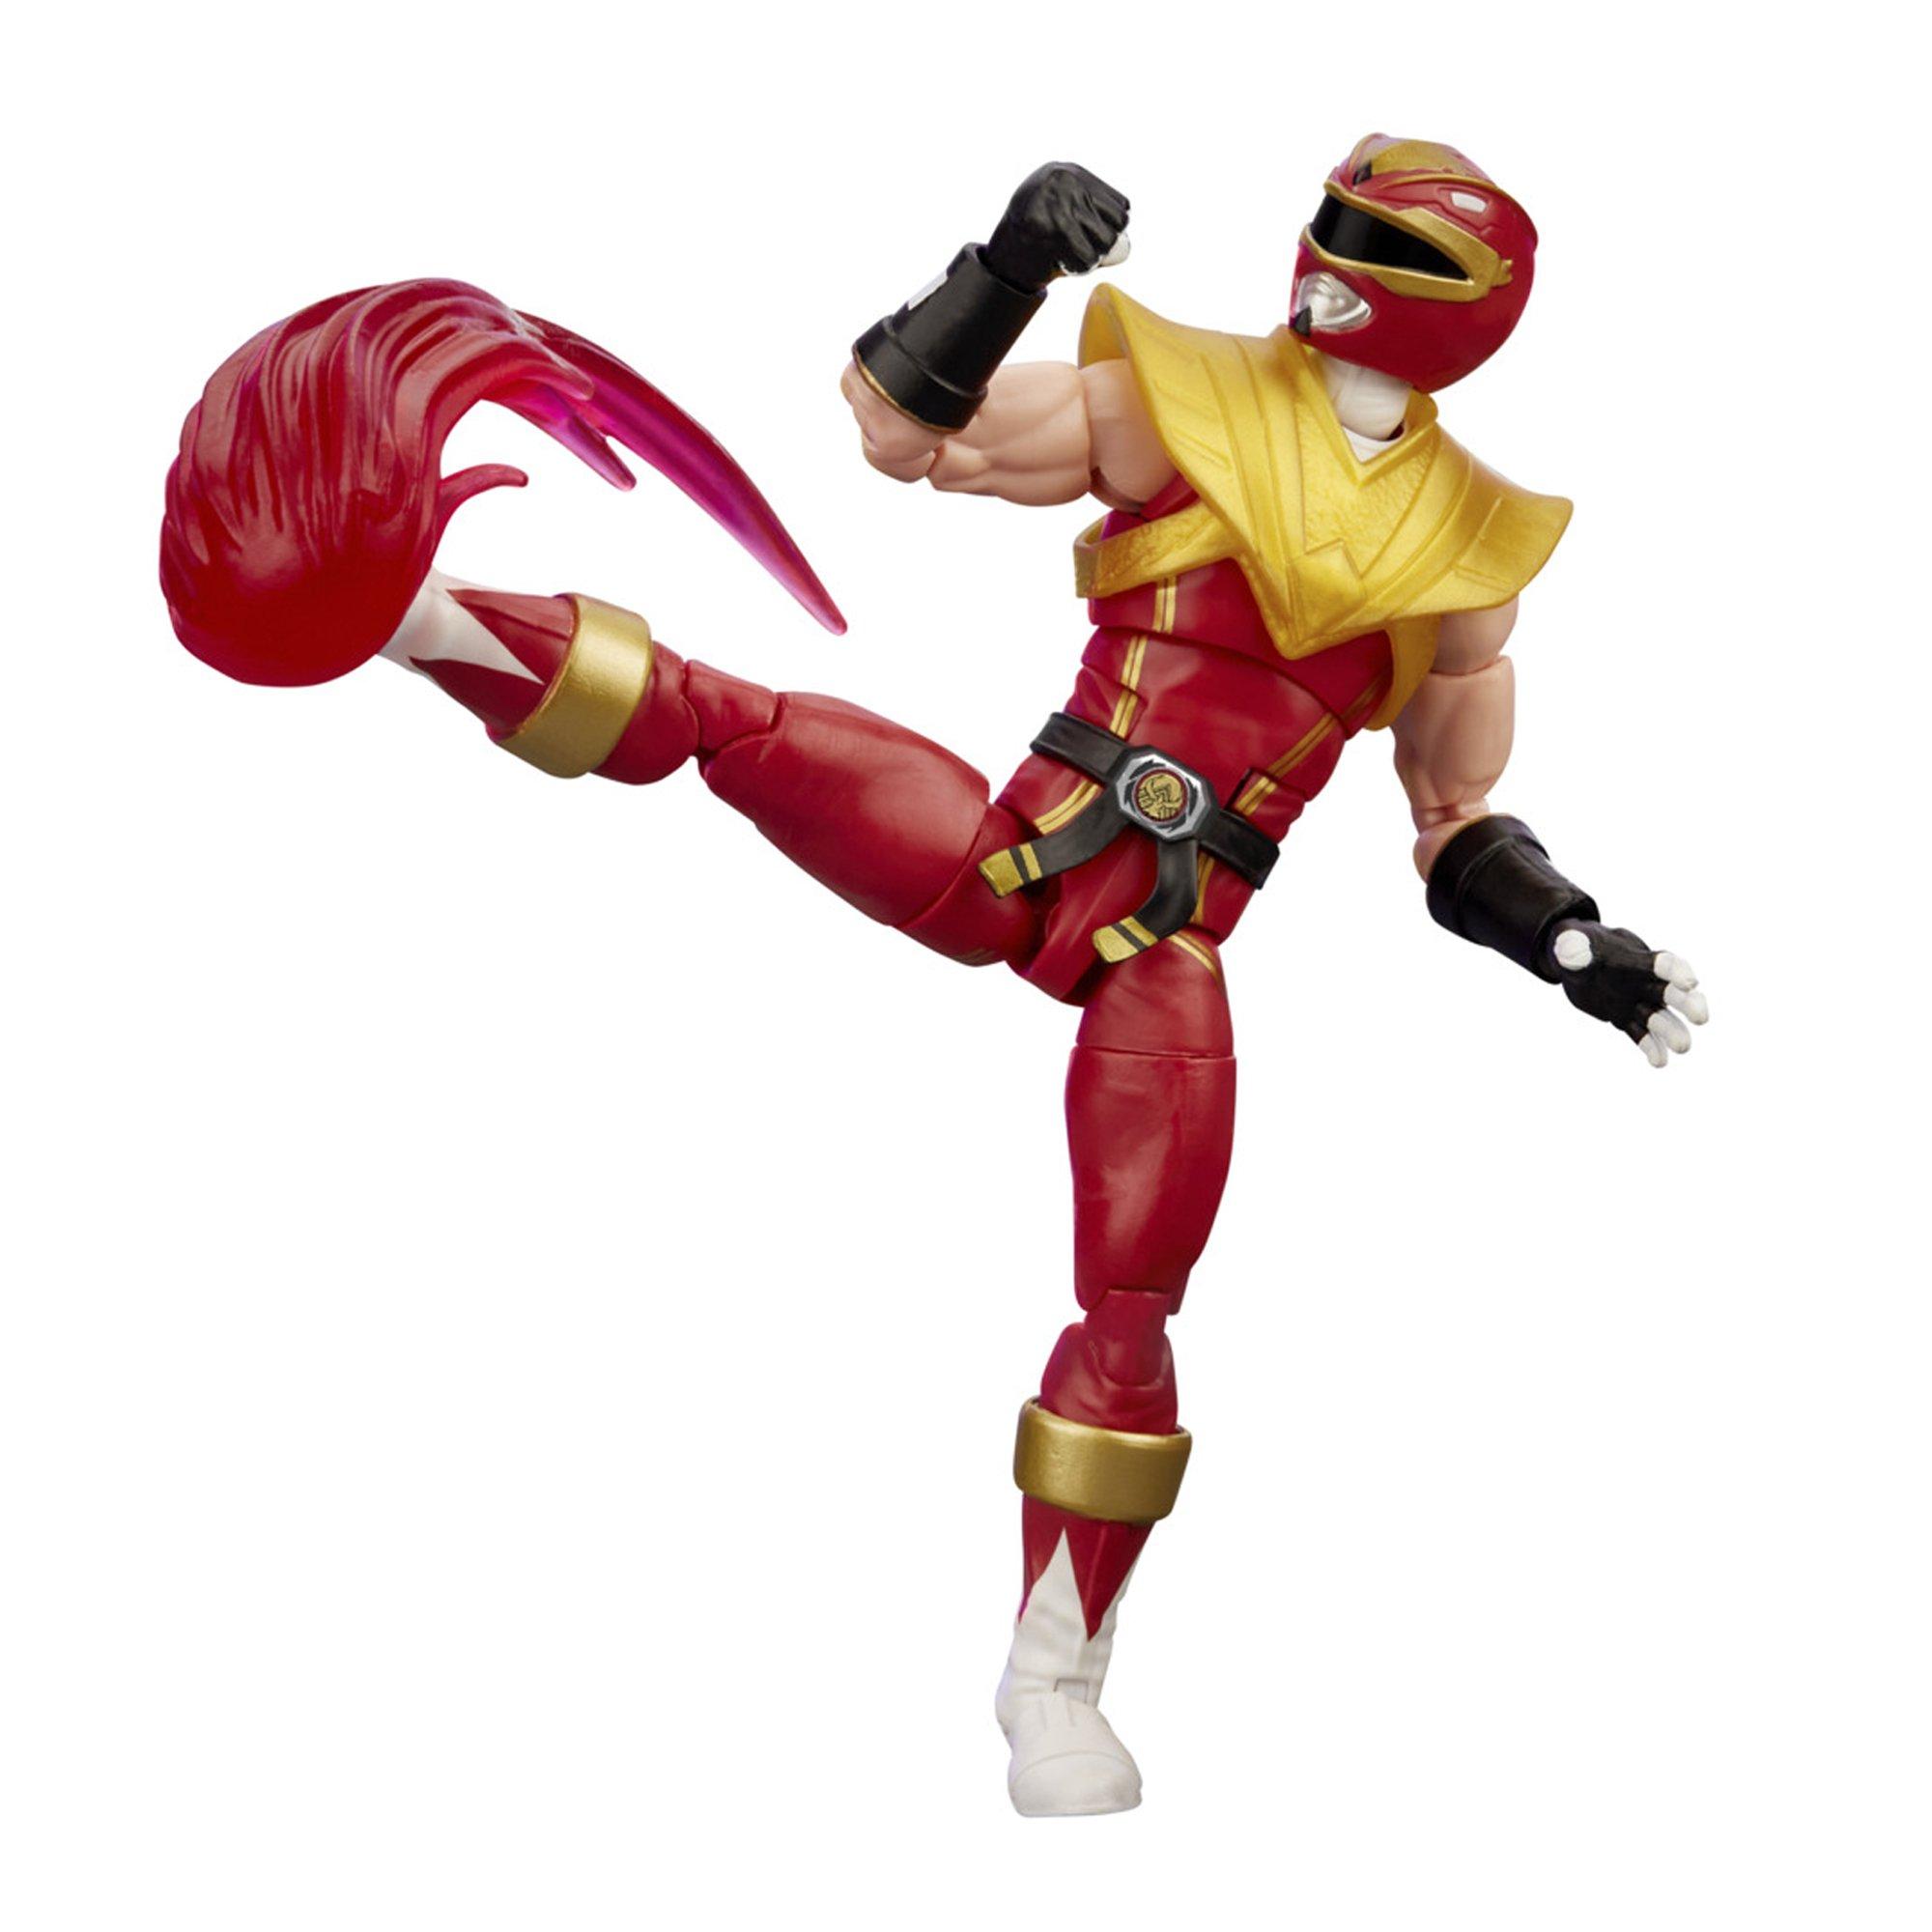 Lot figurine marvel super hero et power ranger